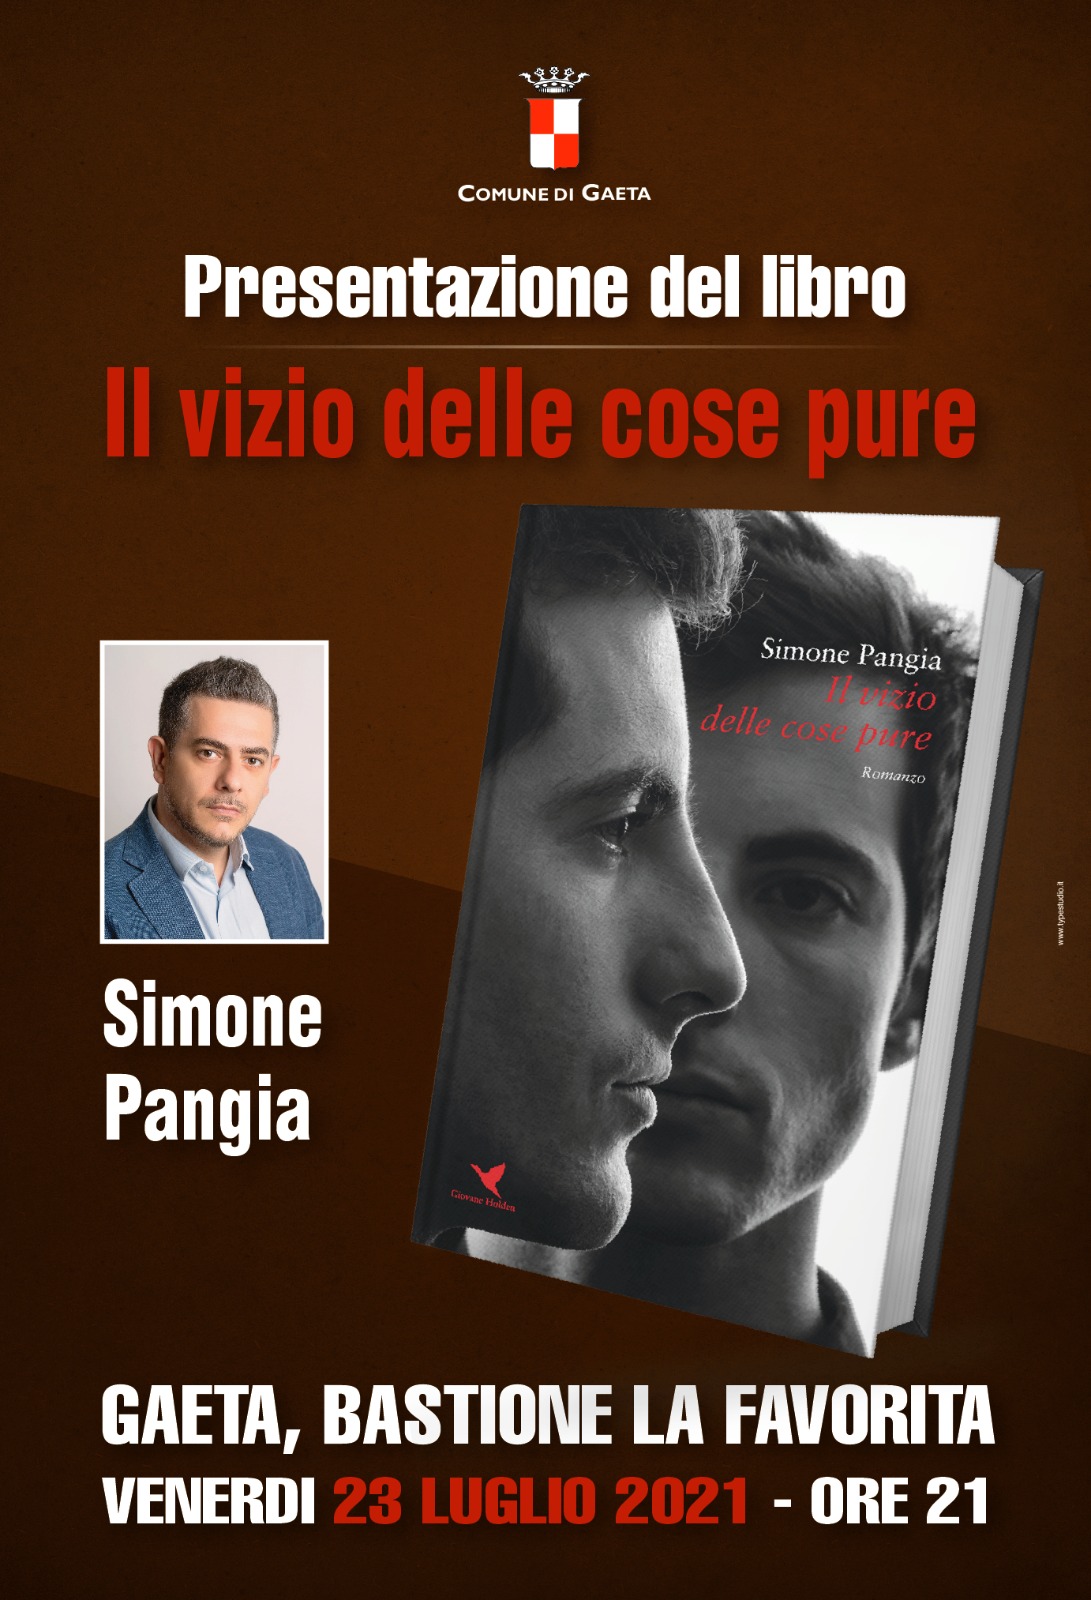 "Il vizio delle cose pure", presentazione del libro di Simone Pangia, venerdì 23 luglio ore 21 Bastione la "Favorita".